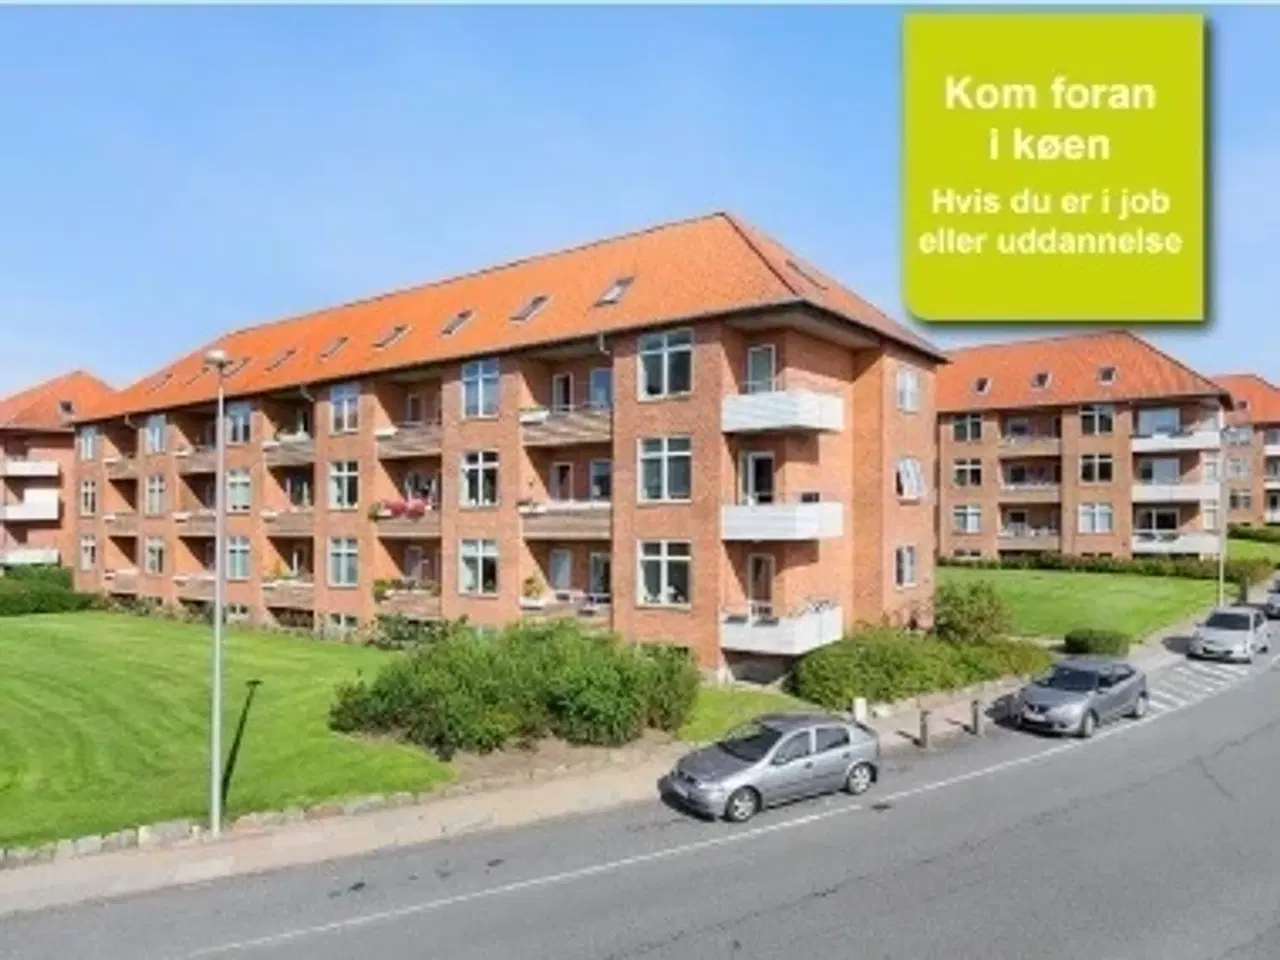 Billede 1 - Stadfeldtsvej, 83 m2, 2 værelser, 4.712 kr., Randers NØ, Aarhus